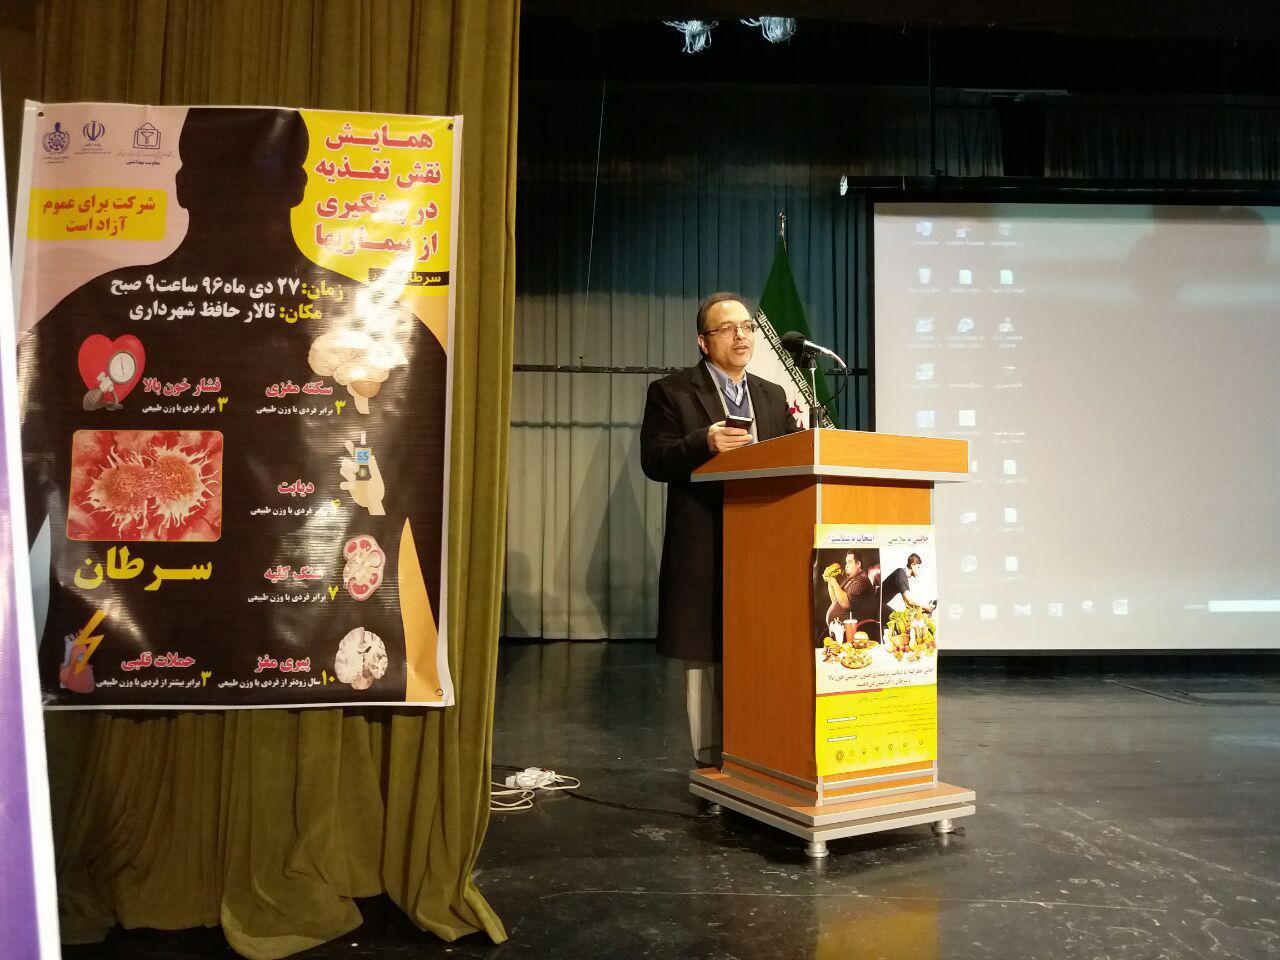 همايش استاني نقش تغذيه در پيشگيري از بيماري ها در تالار حافظ شهرداري بجنورد برگزار شد.27دیماه